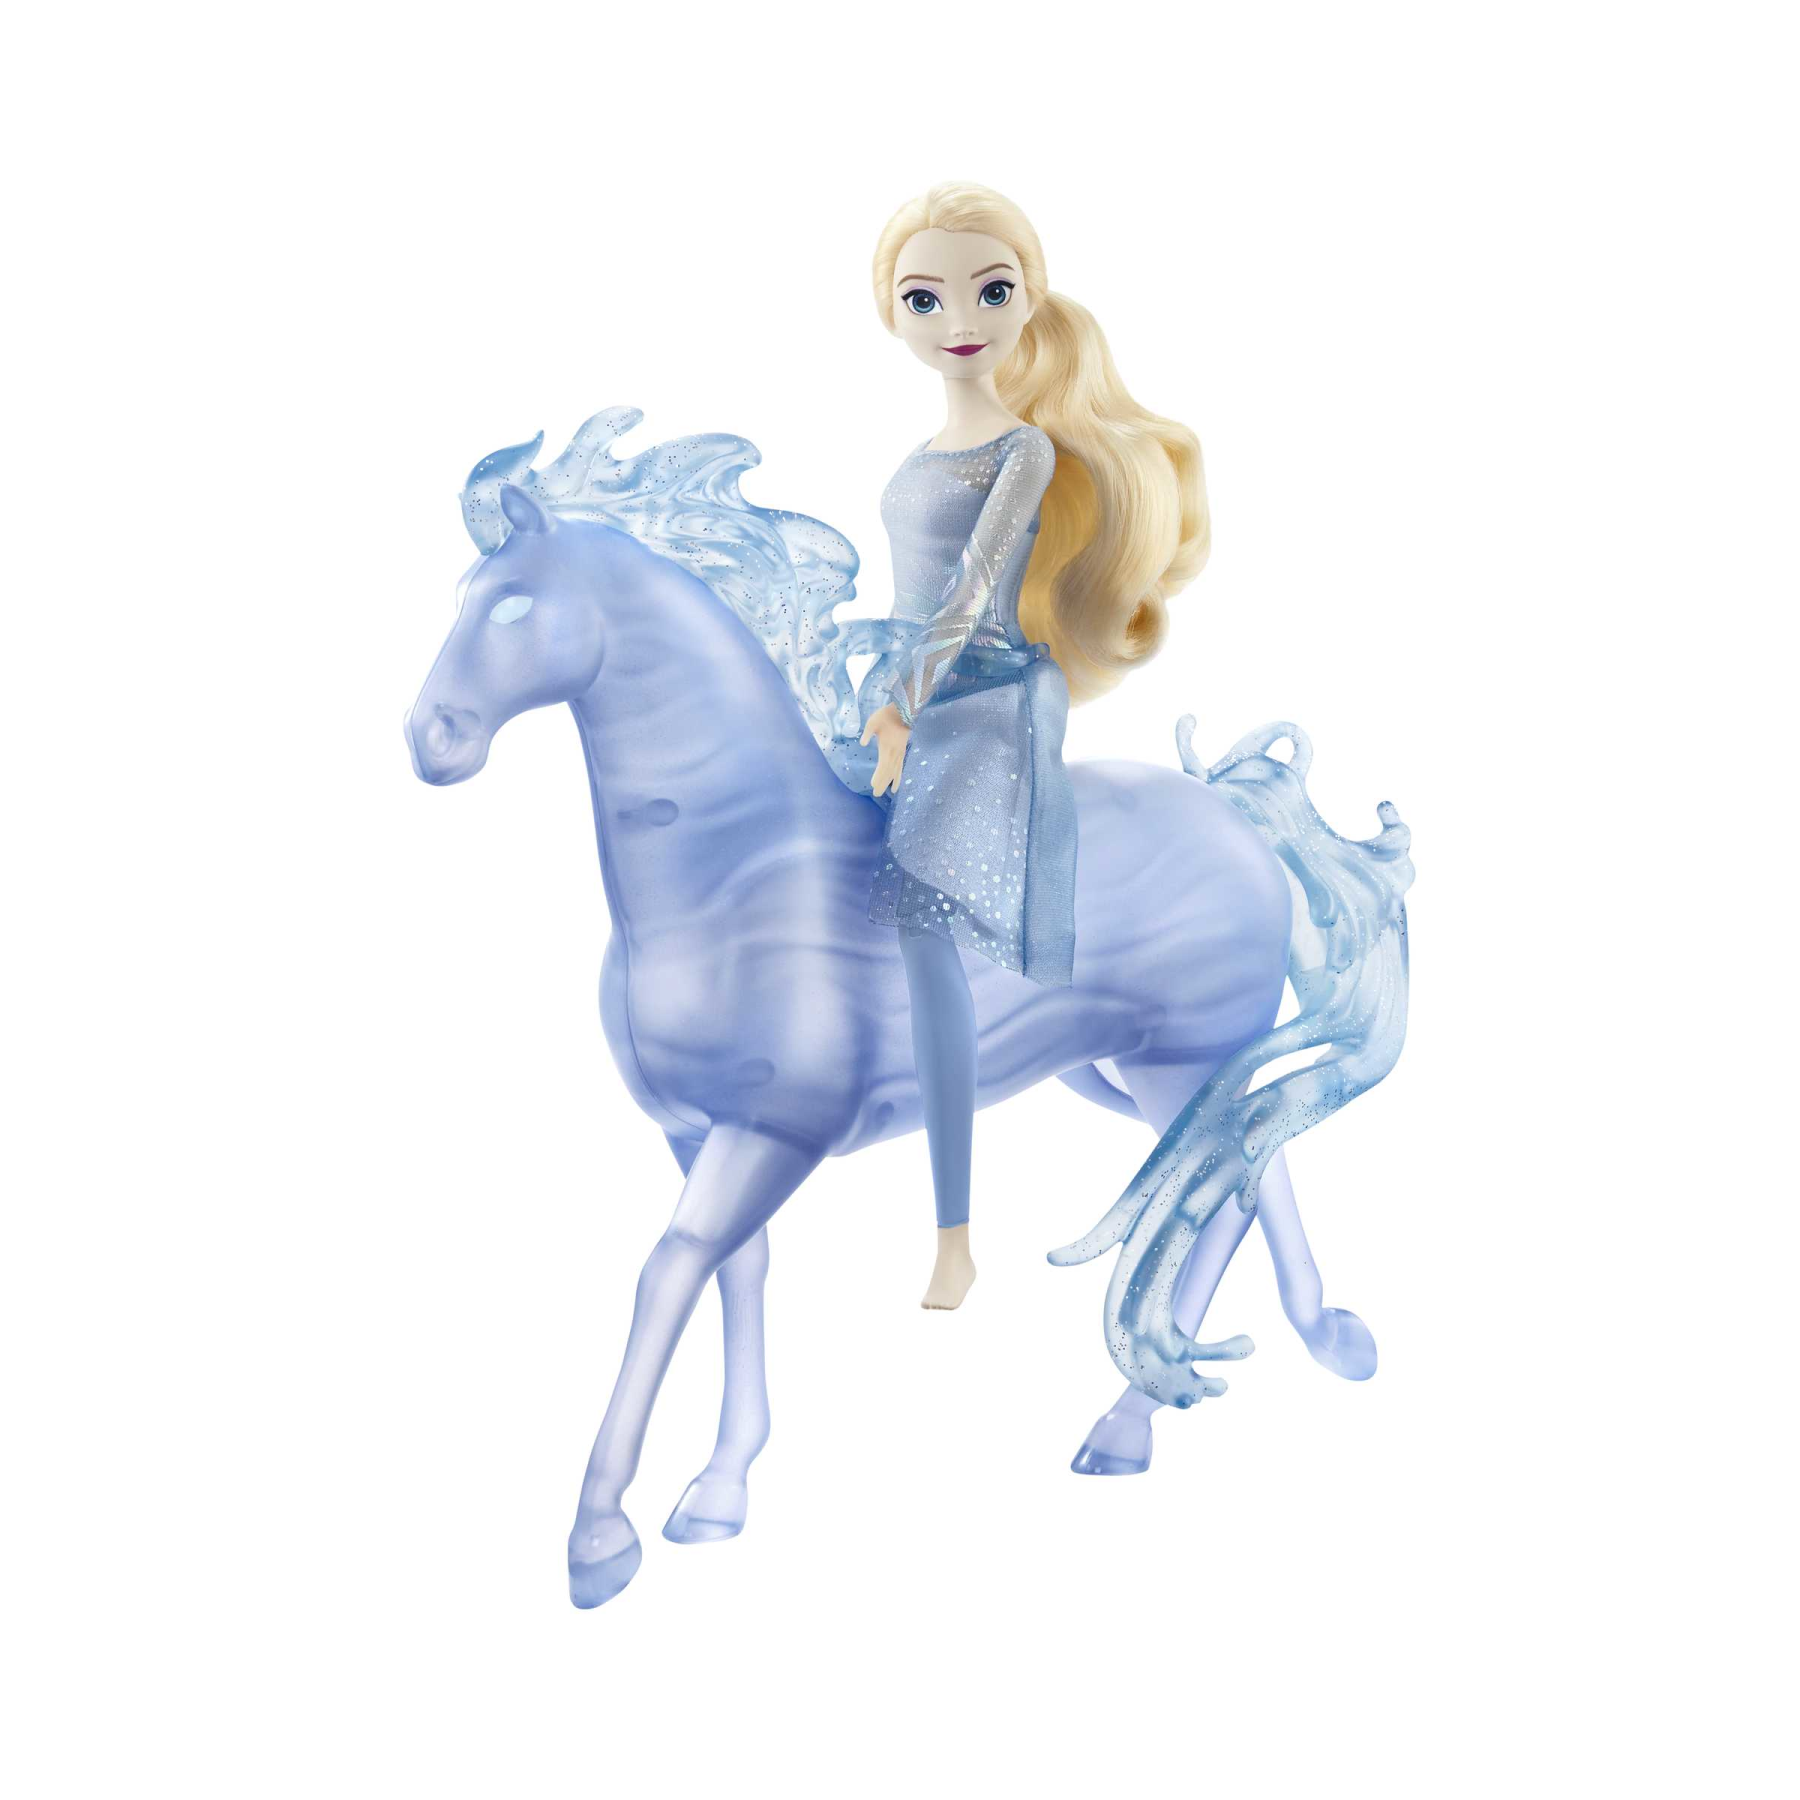 Disney frozen - elsa e nook, set con bambola con abito azzurro e creatura acquatica a forma di cavallo, ispirati al film disney frozen 2, 3+ anni, hlw58 - DISNEY PRINCESS, Frozen